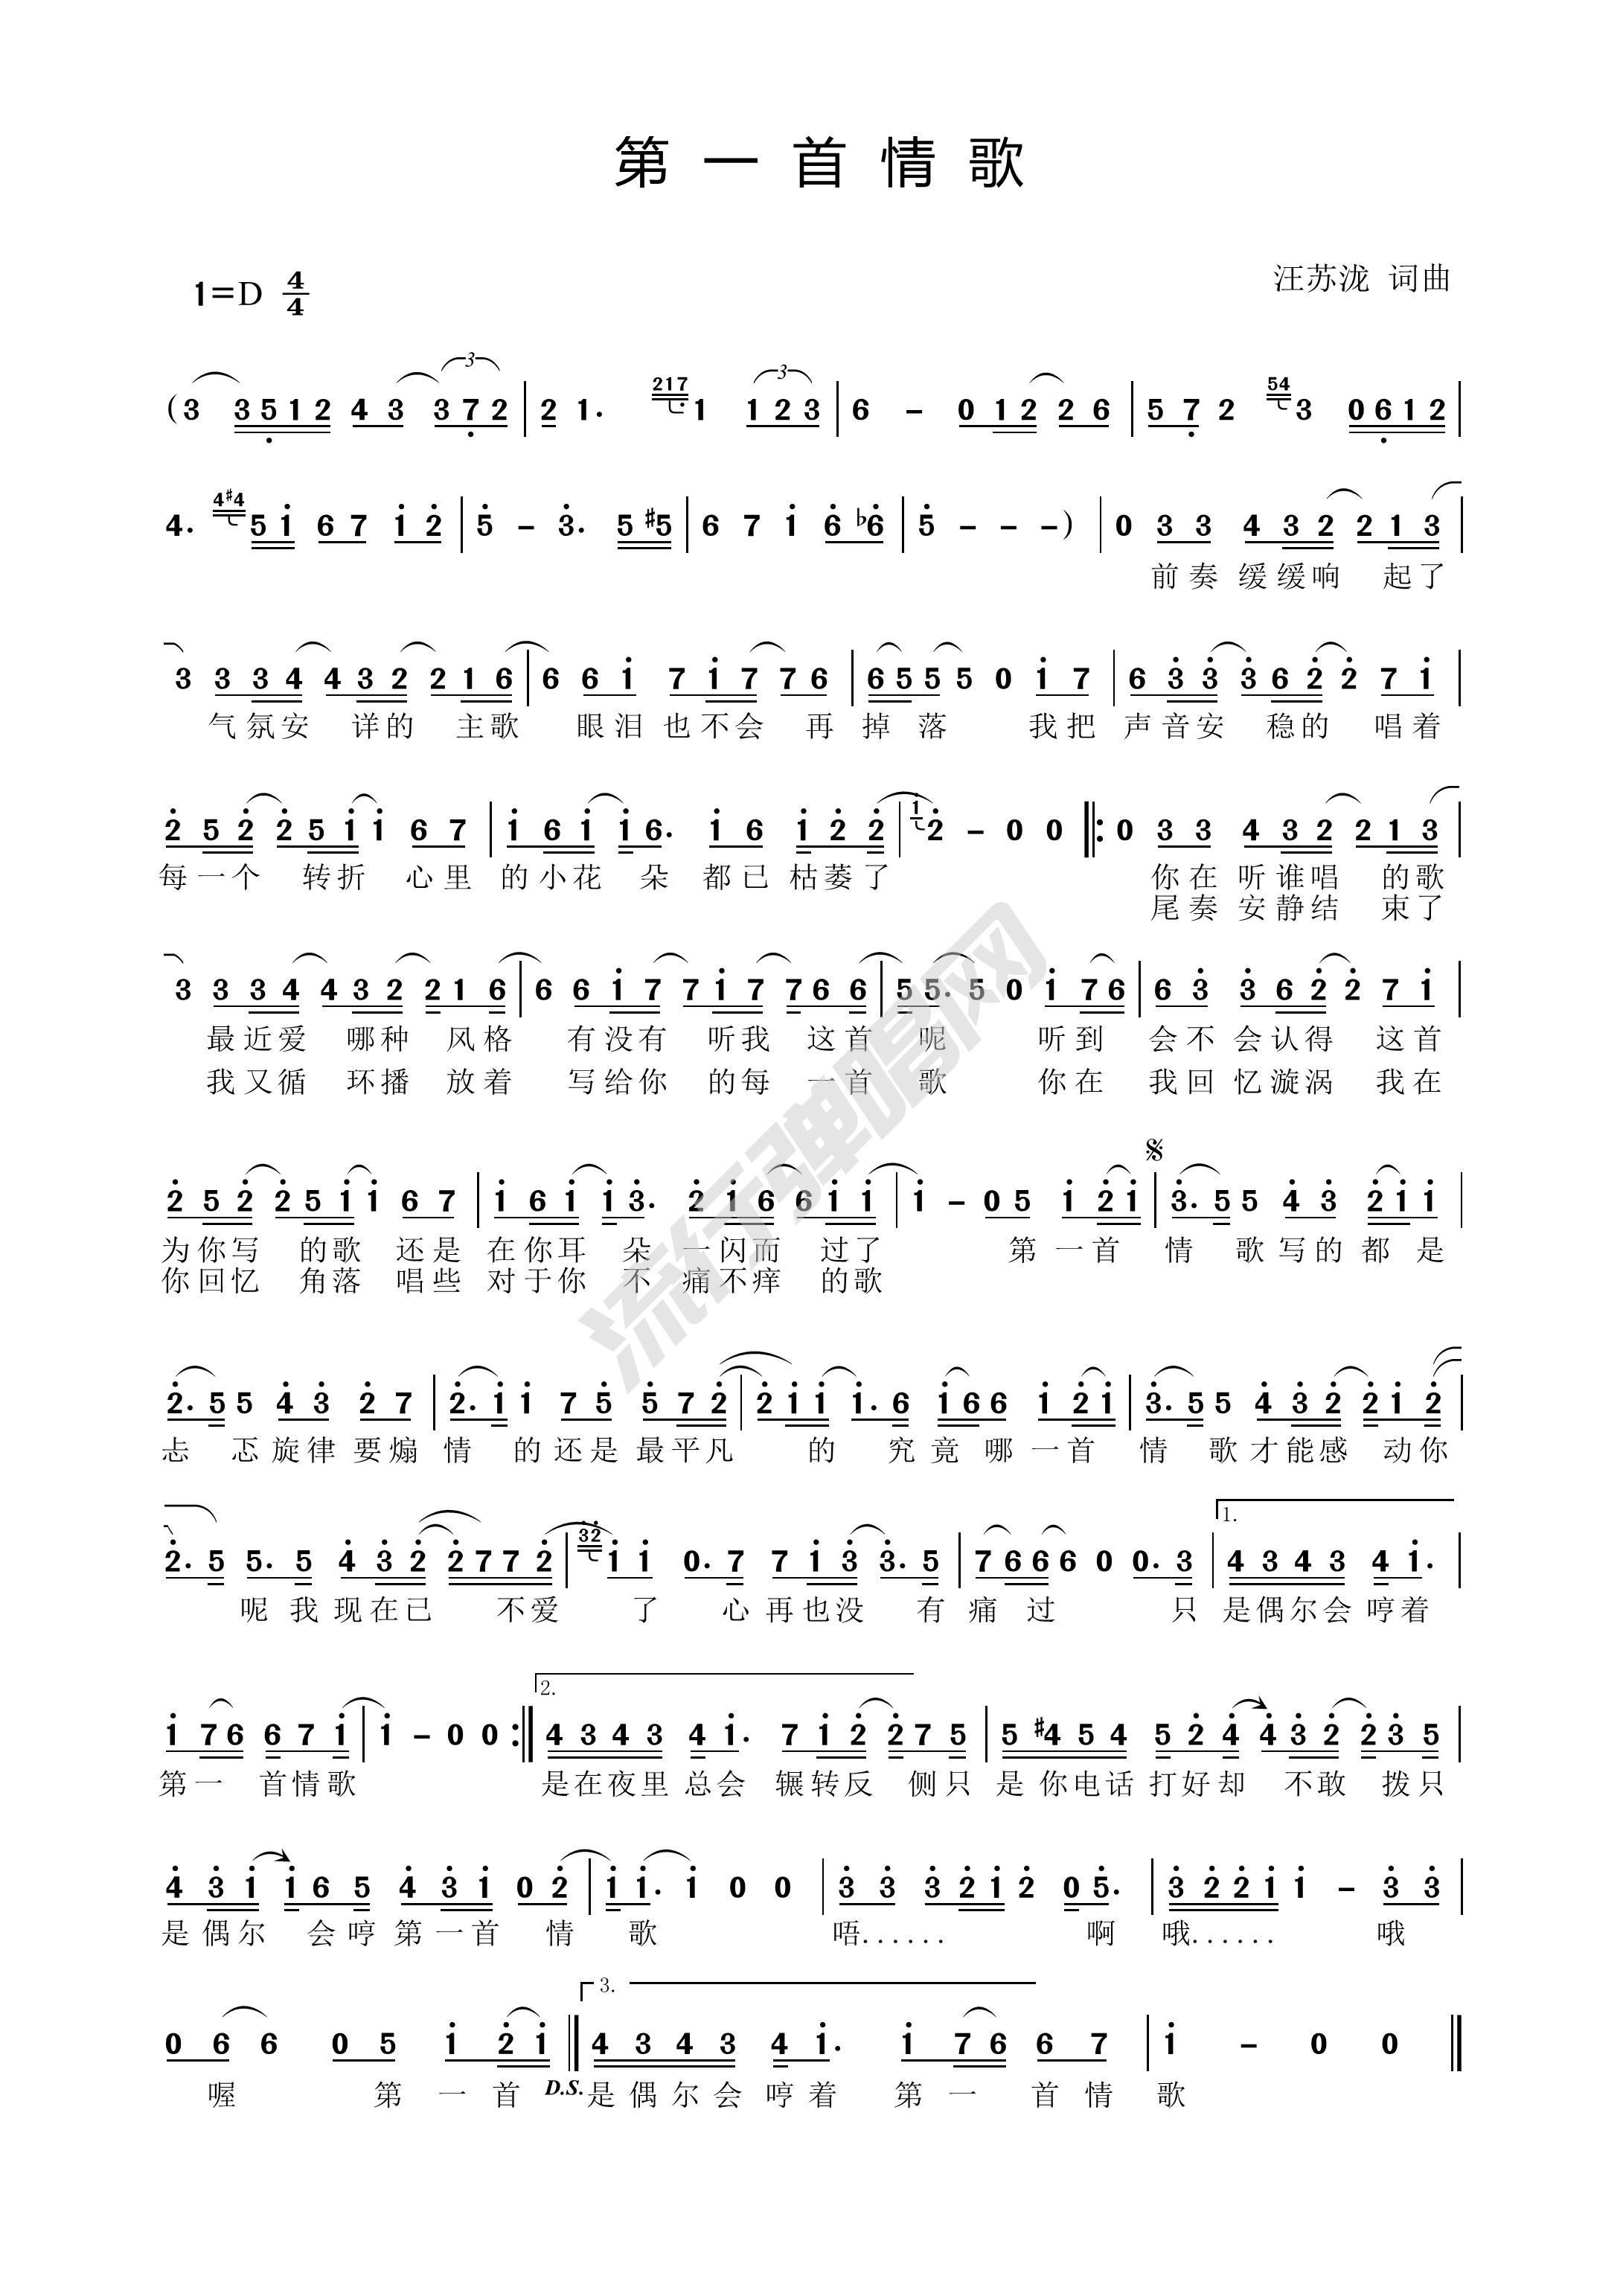 第一首情歌-汪苏泷双手简谱预览1-钢琴谱文件（五线谱、双手简谱、数字谱、Midi、PDF）免费下载